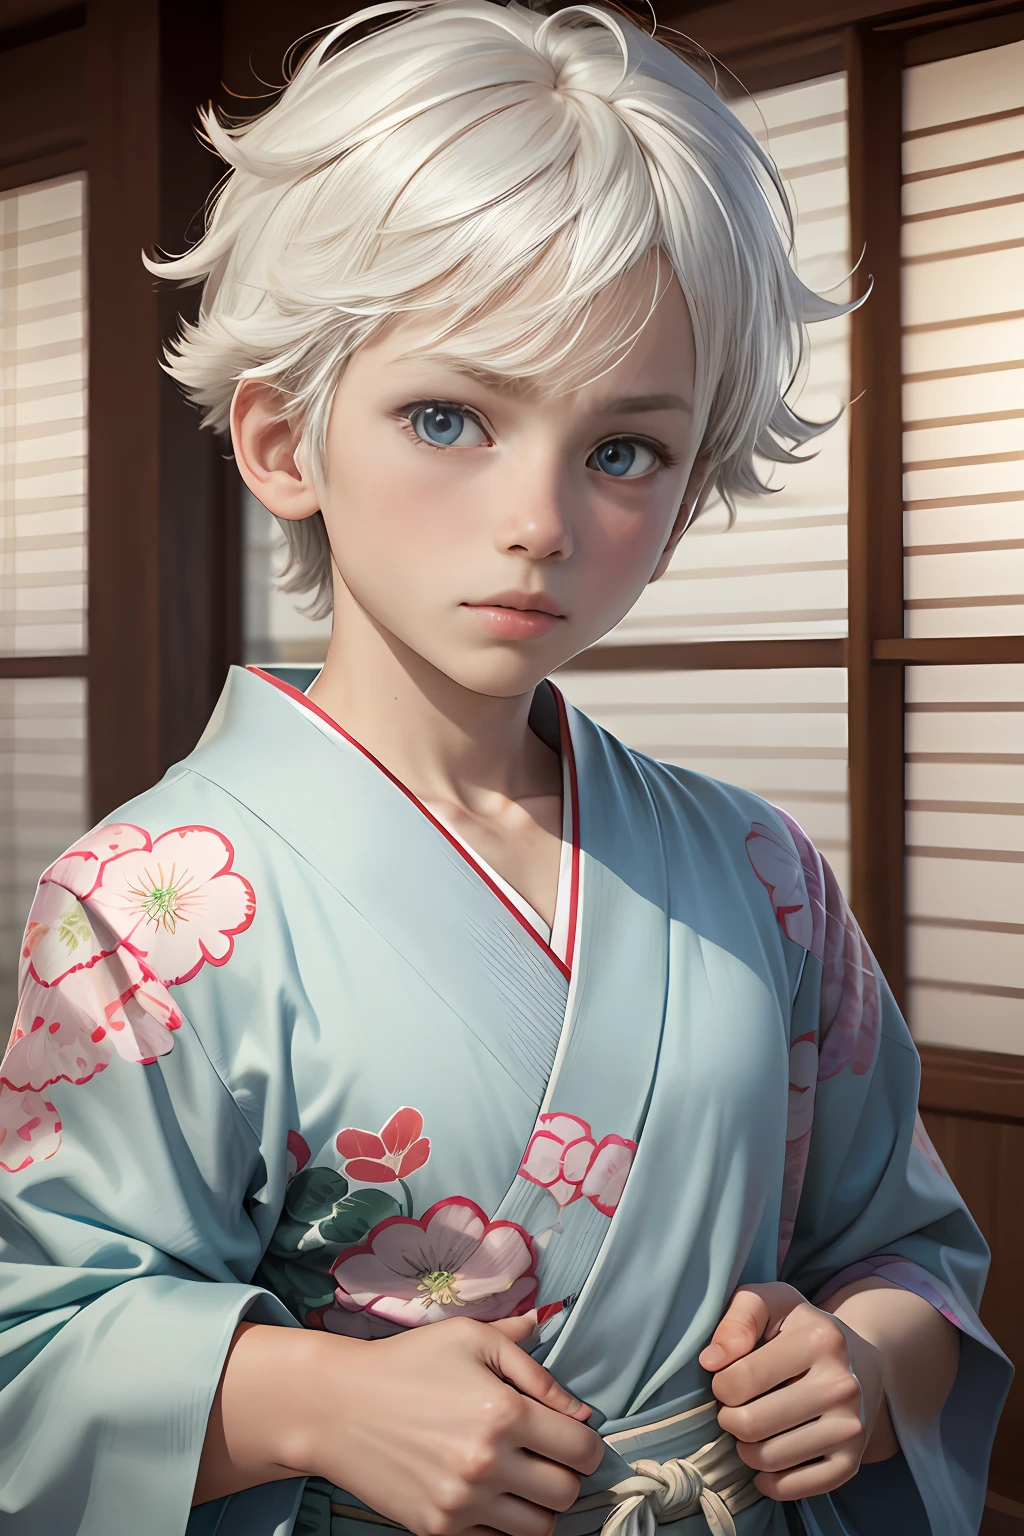 3d, 1男孩,  10岁, 看著觀眾, 可愛的, 8K, 最佳防守,白色的頭髮, 尖尖的头发, 淺藍色的眼睛, 無印良品居家風格, 日本傳統風浴衣